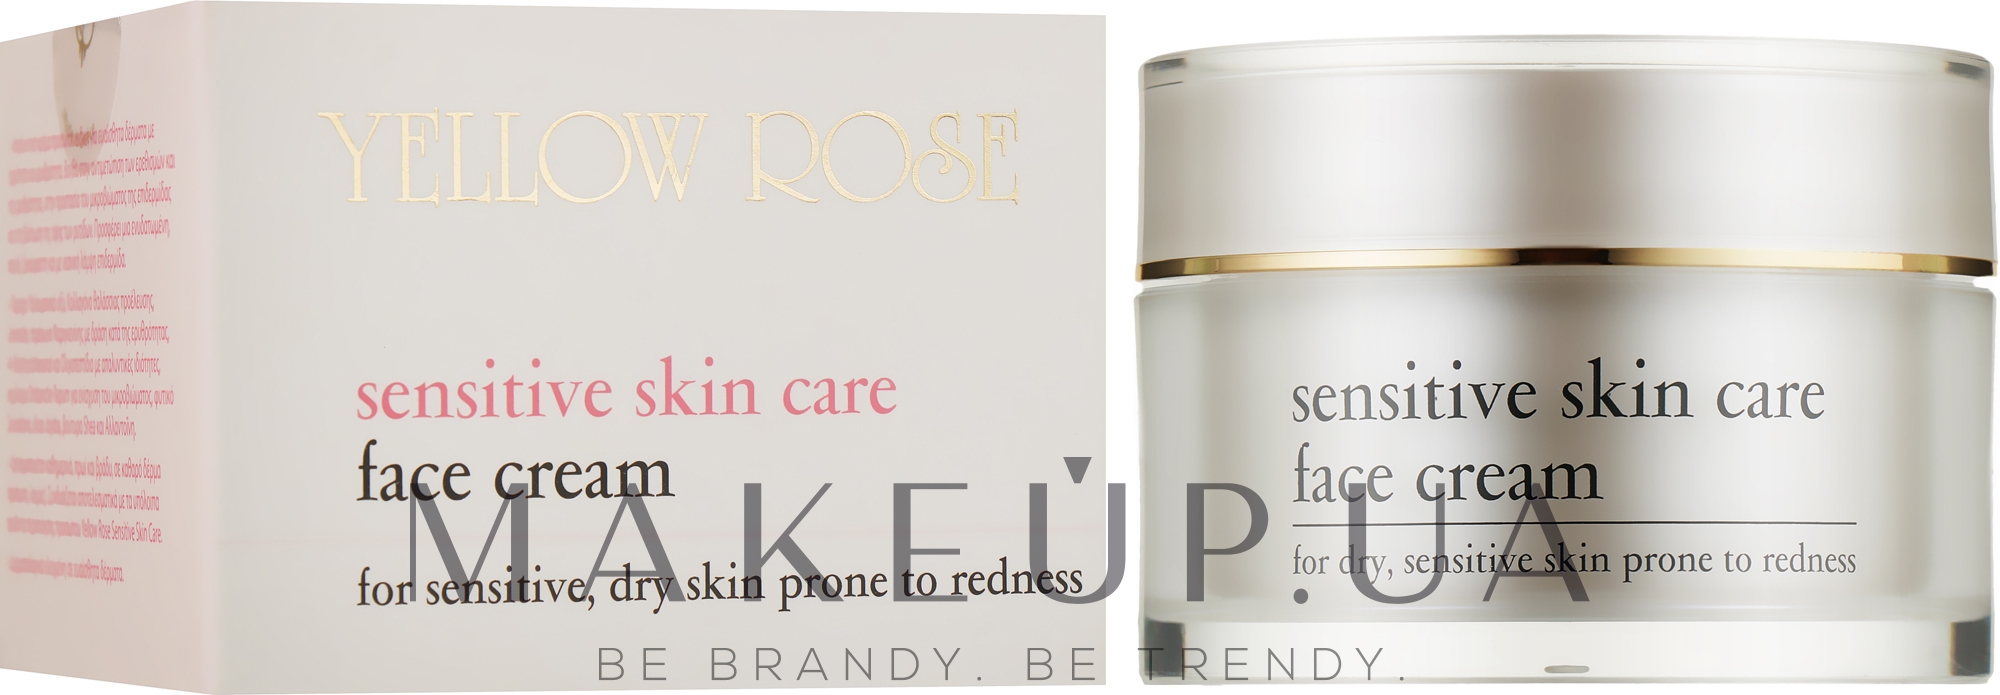 Крем для чувствительной кожи - Yellow Rose Sensitive Skin Care Face Cream — фото 50ml